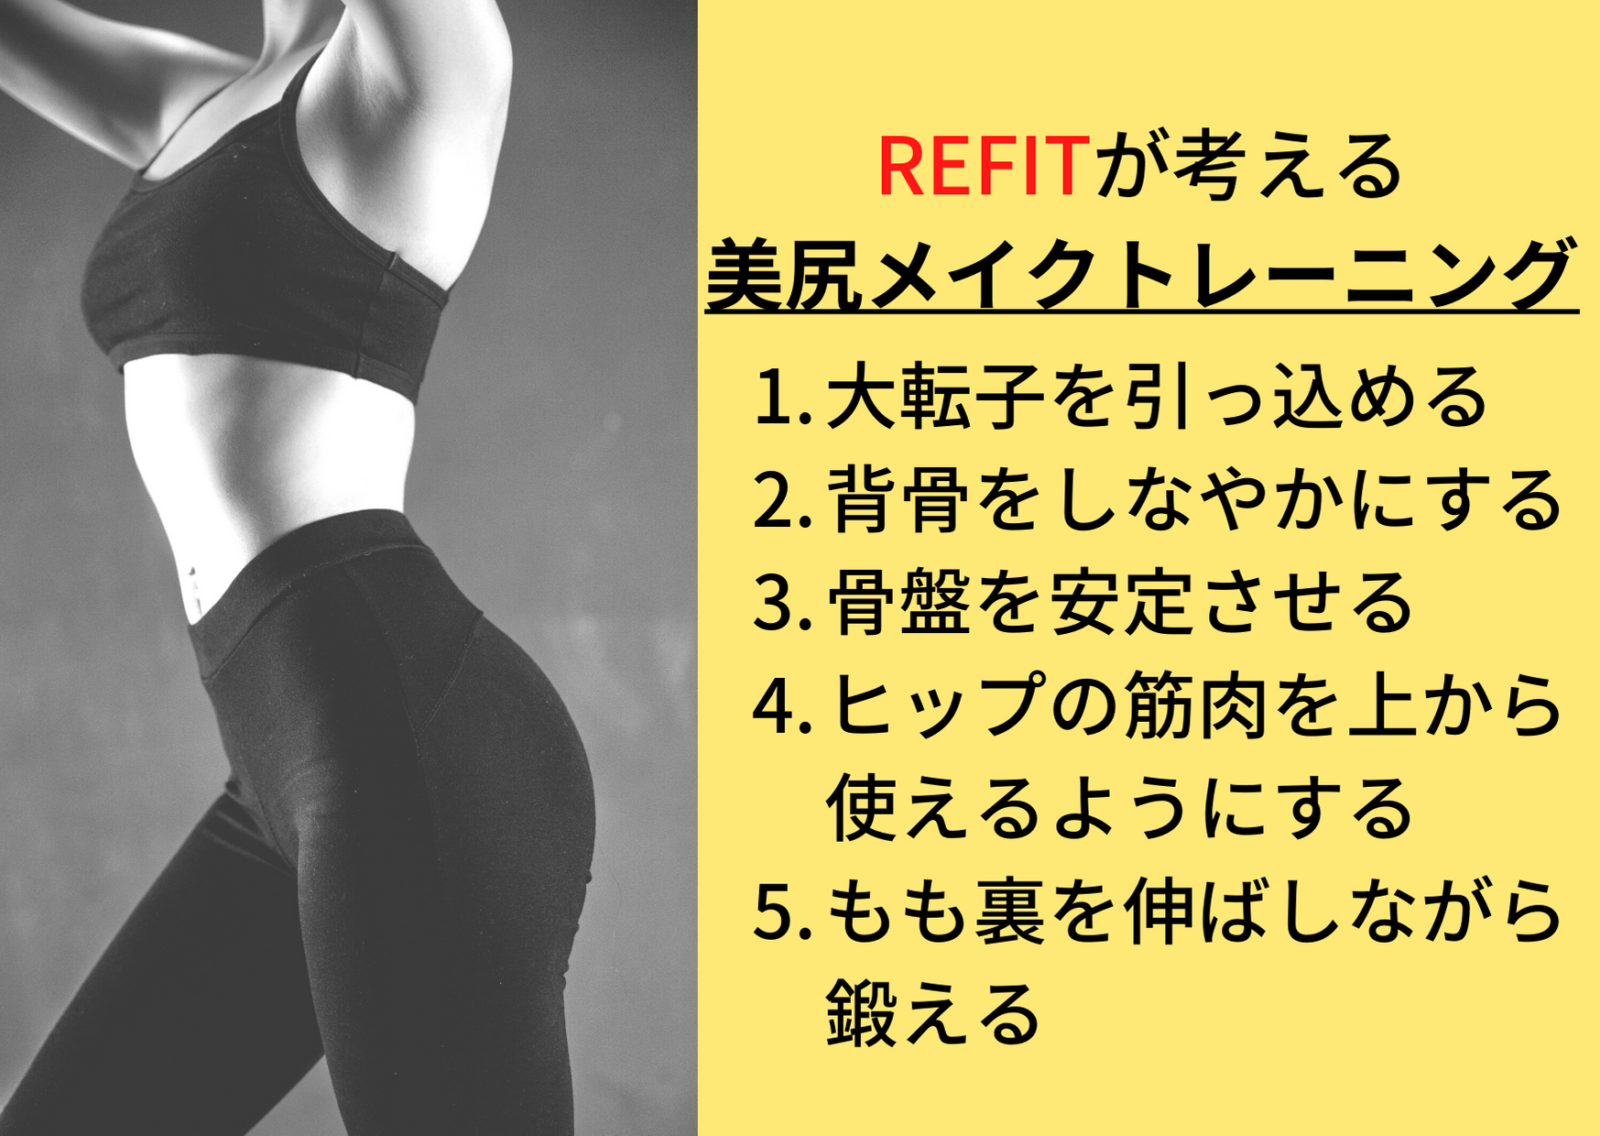 美尻メイクトレーニングについて 名古屋 栄のo脚改善 下半身ダイエット特化型パーソナルトレーニングジム